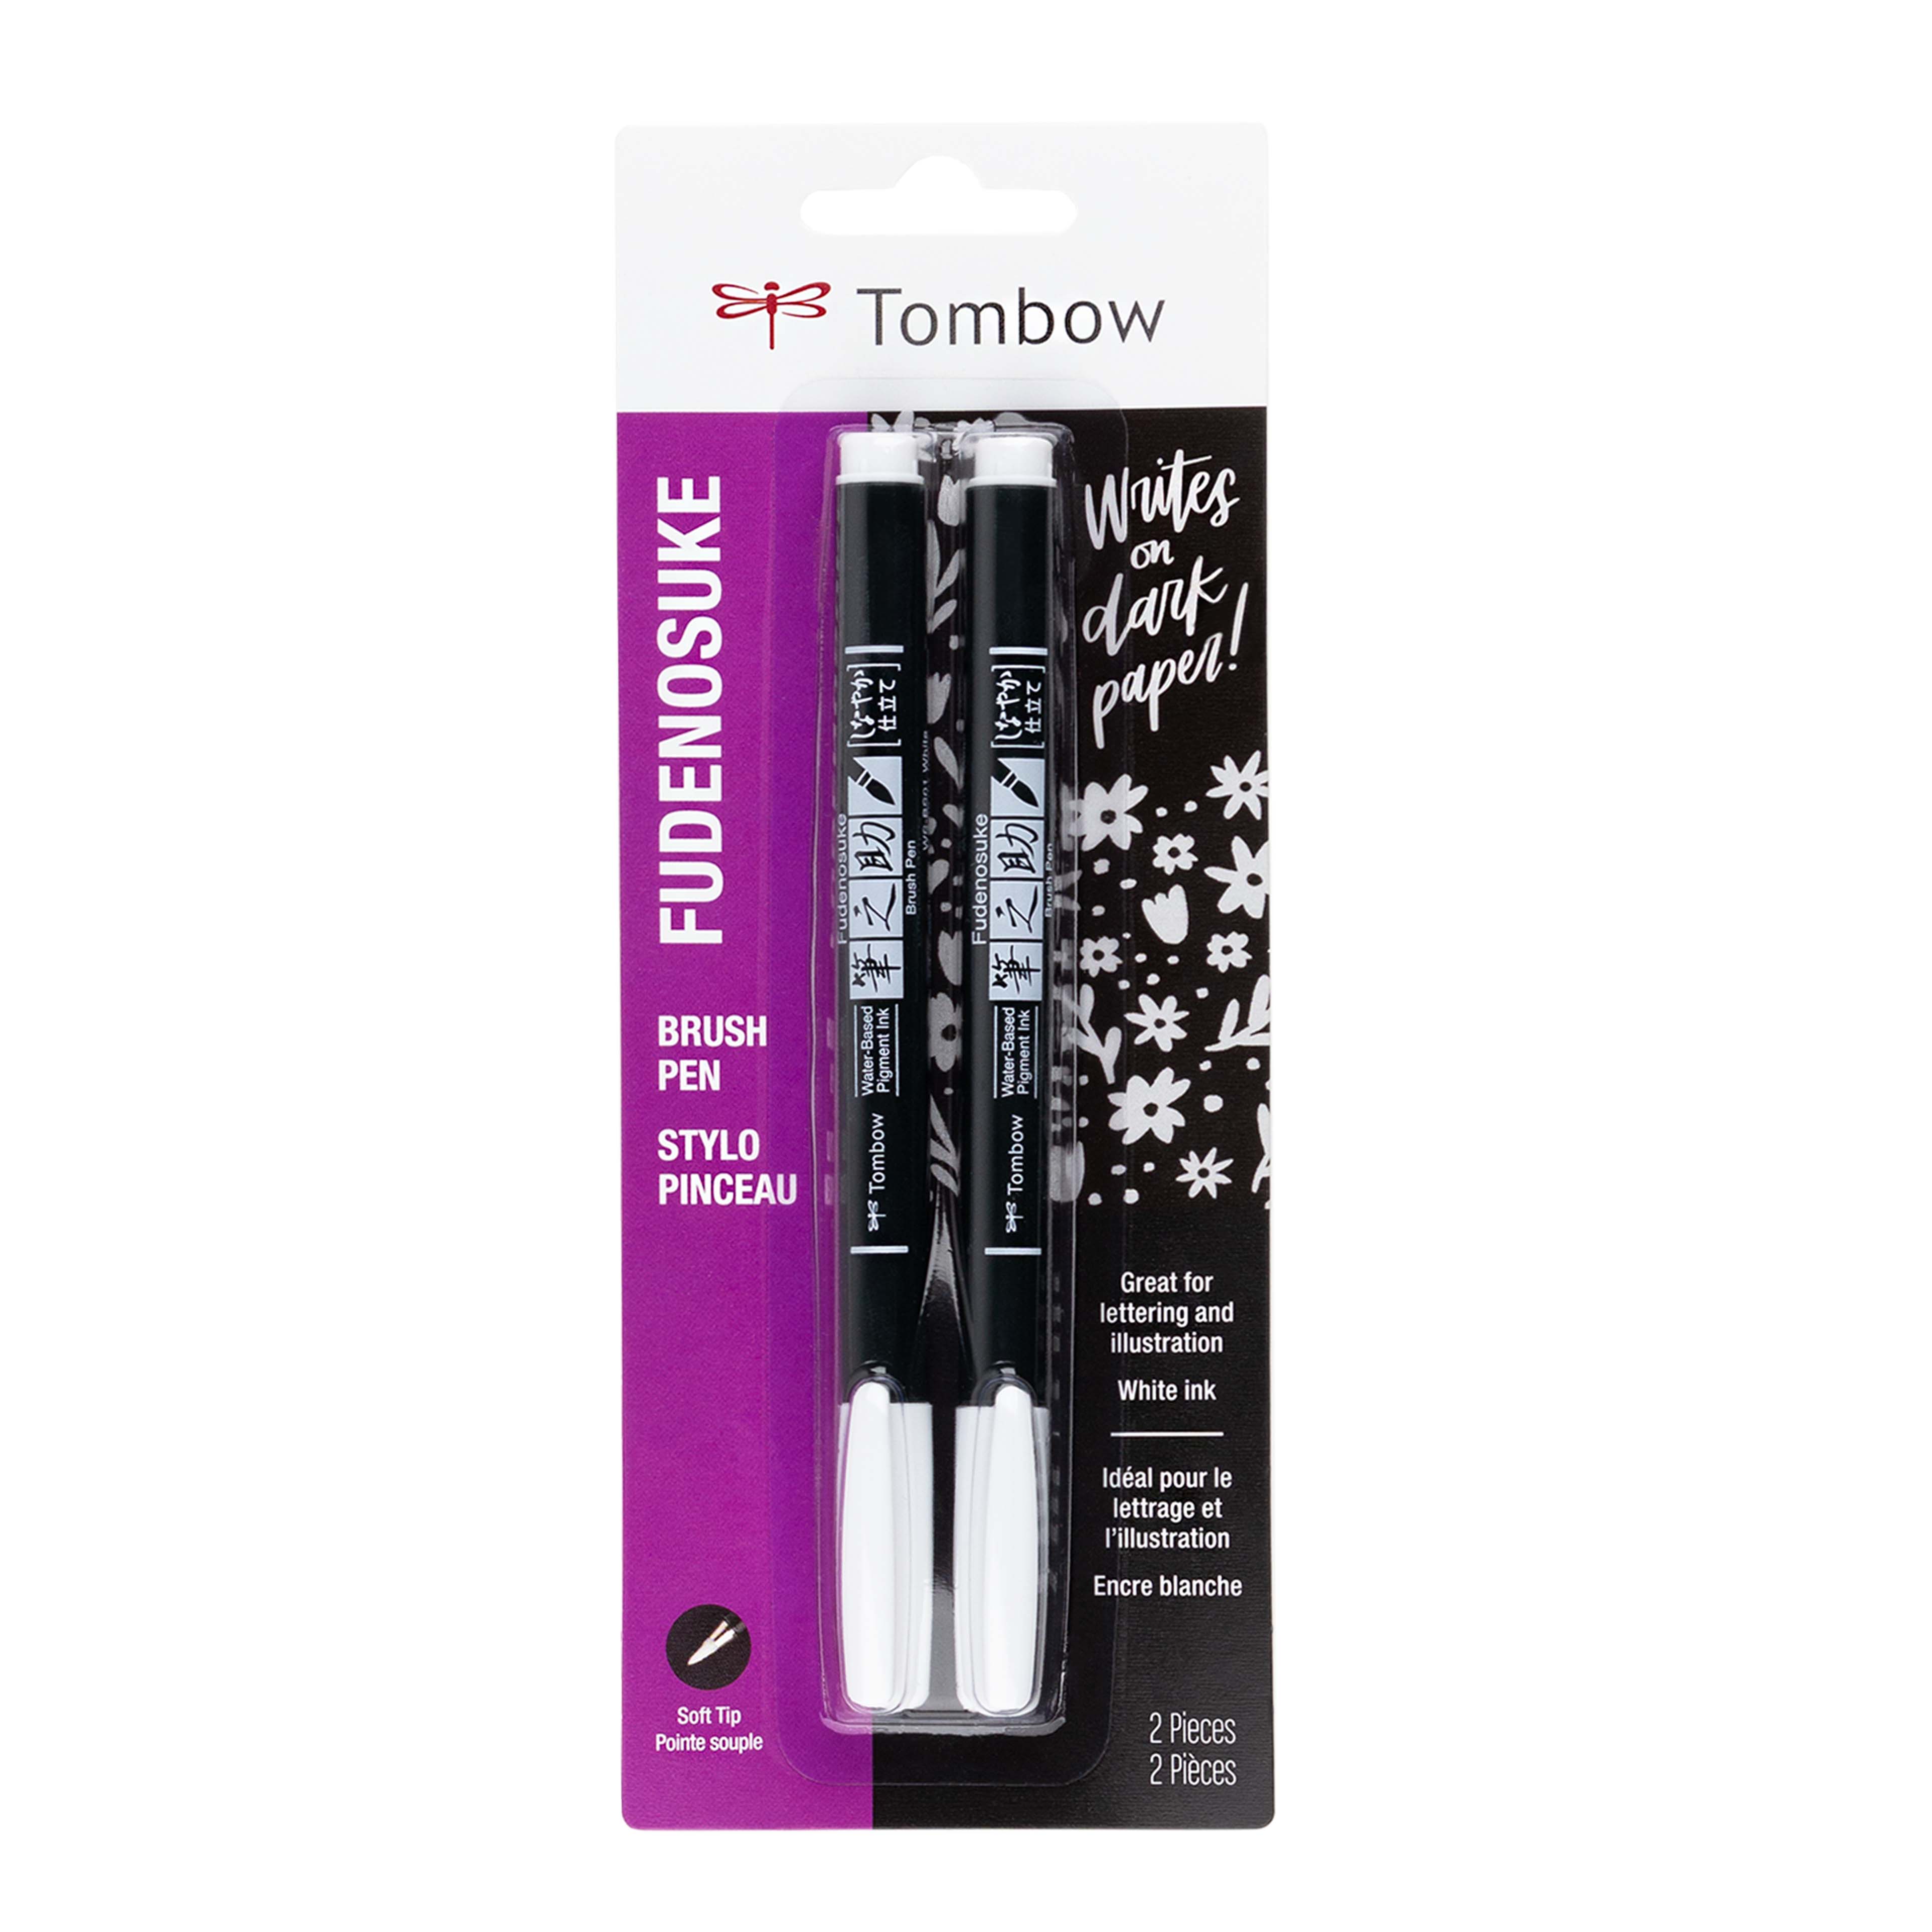 Tombow Fudenosuke Brush Pen Review for Calligraphers 